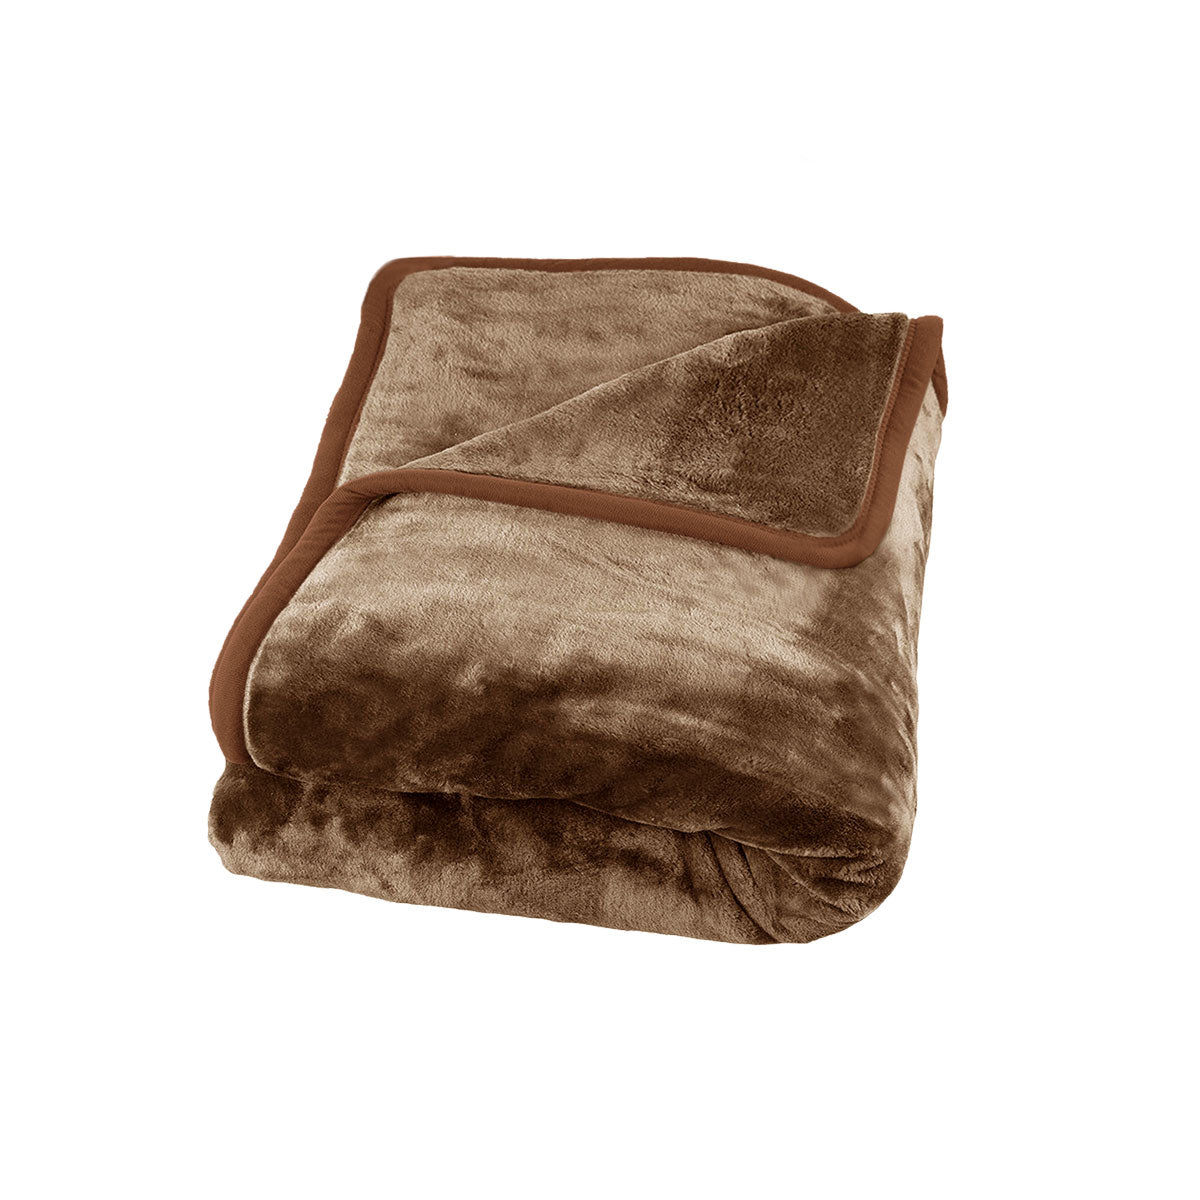 J Elliot Home 800GSM Luxury Winter Thick Mink Blanket Pecan Queen